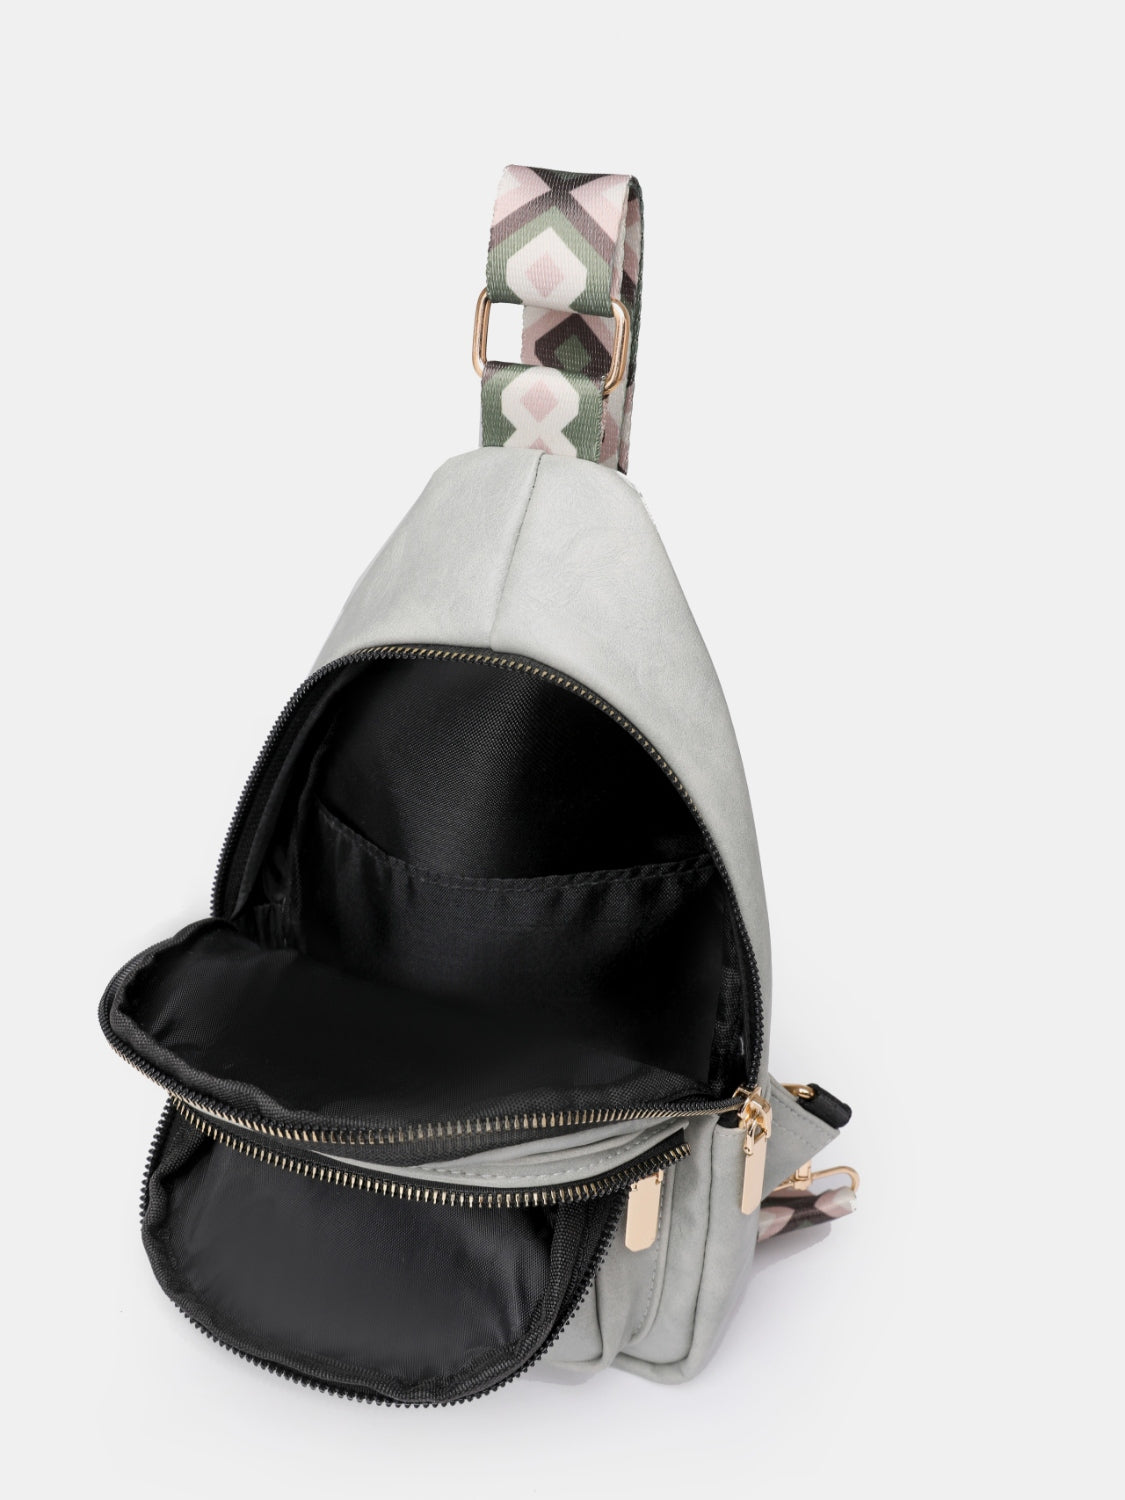 PU Leather Adjustable Strap Sling Bag